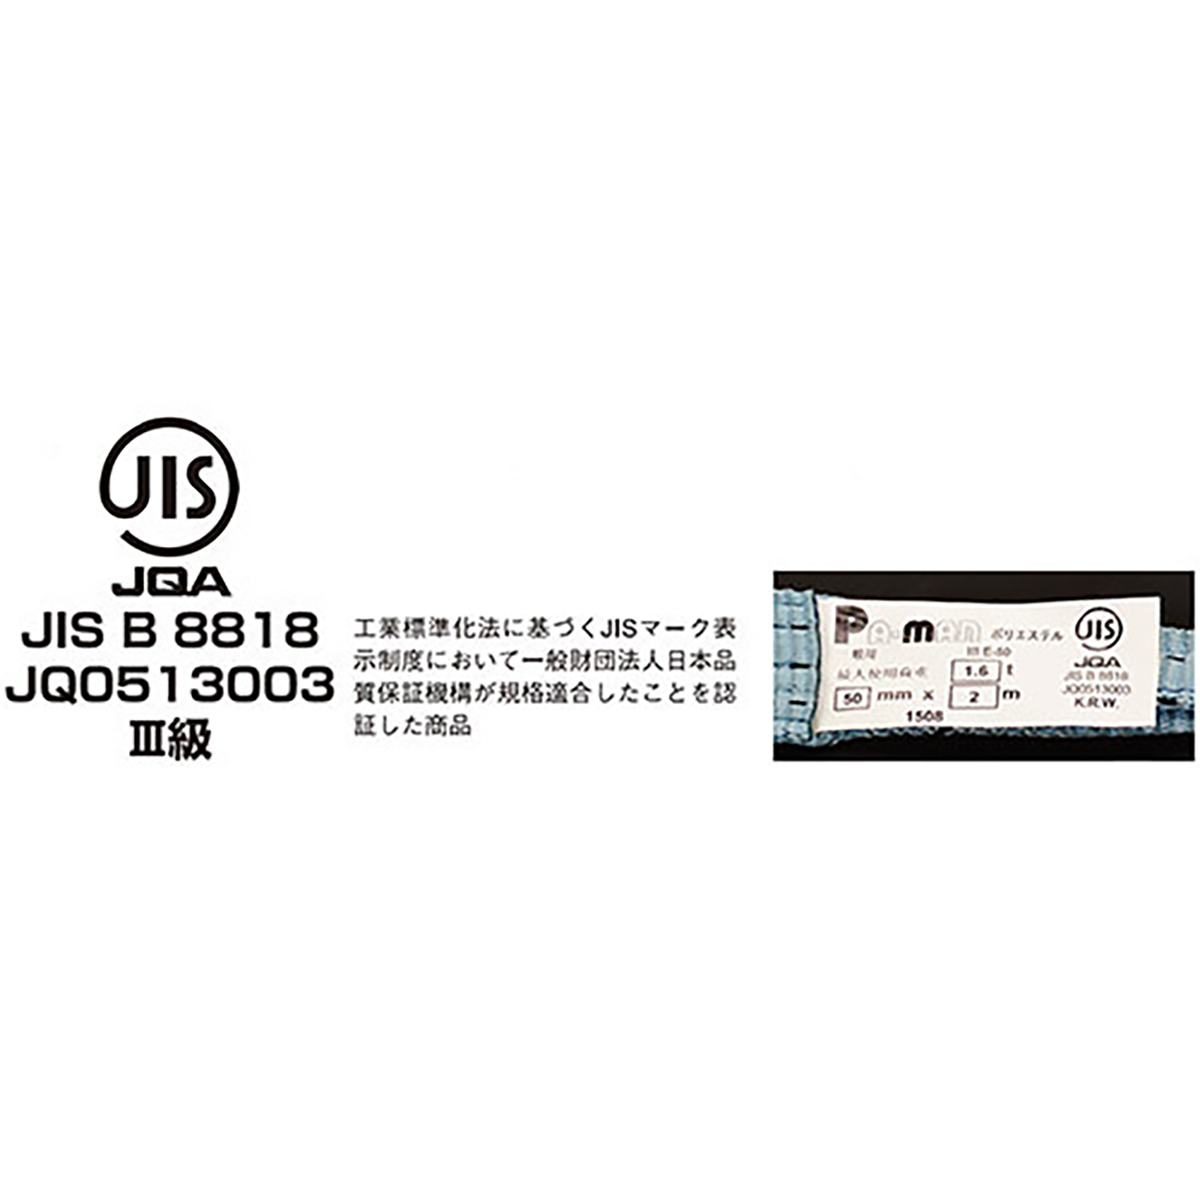 ポリベルトスリング JIS III級 ソフト面付 巾35mm 3.5m 1本